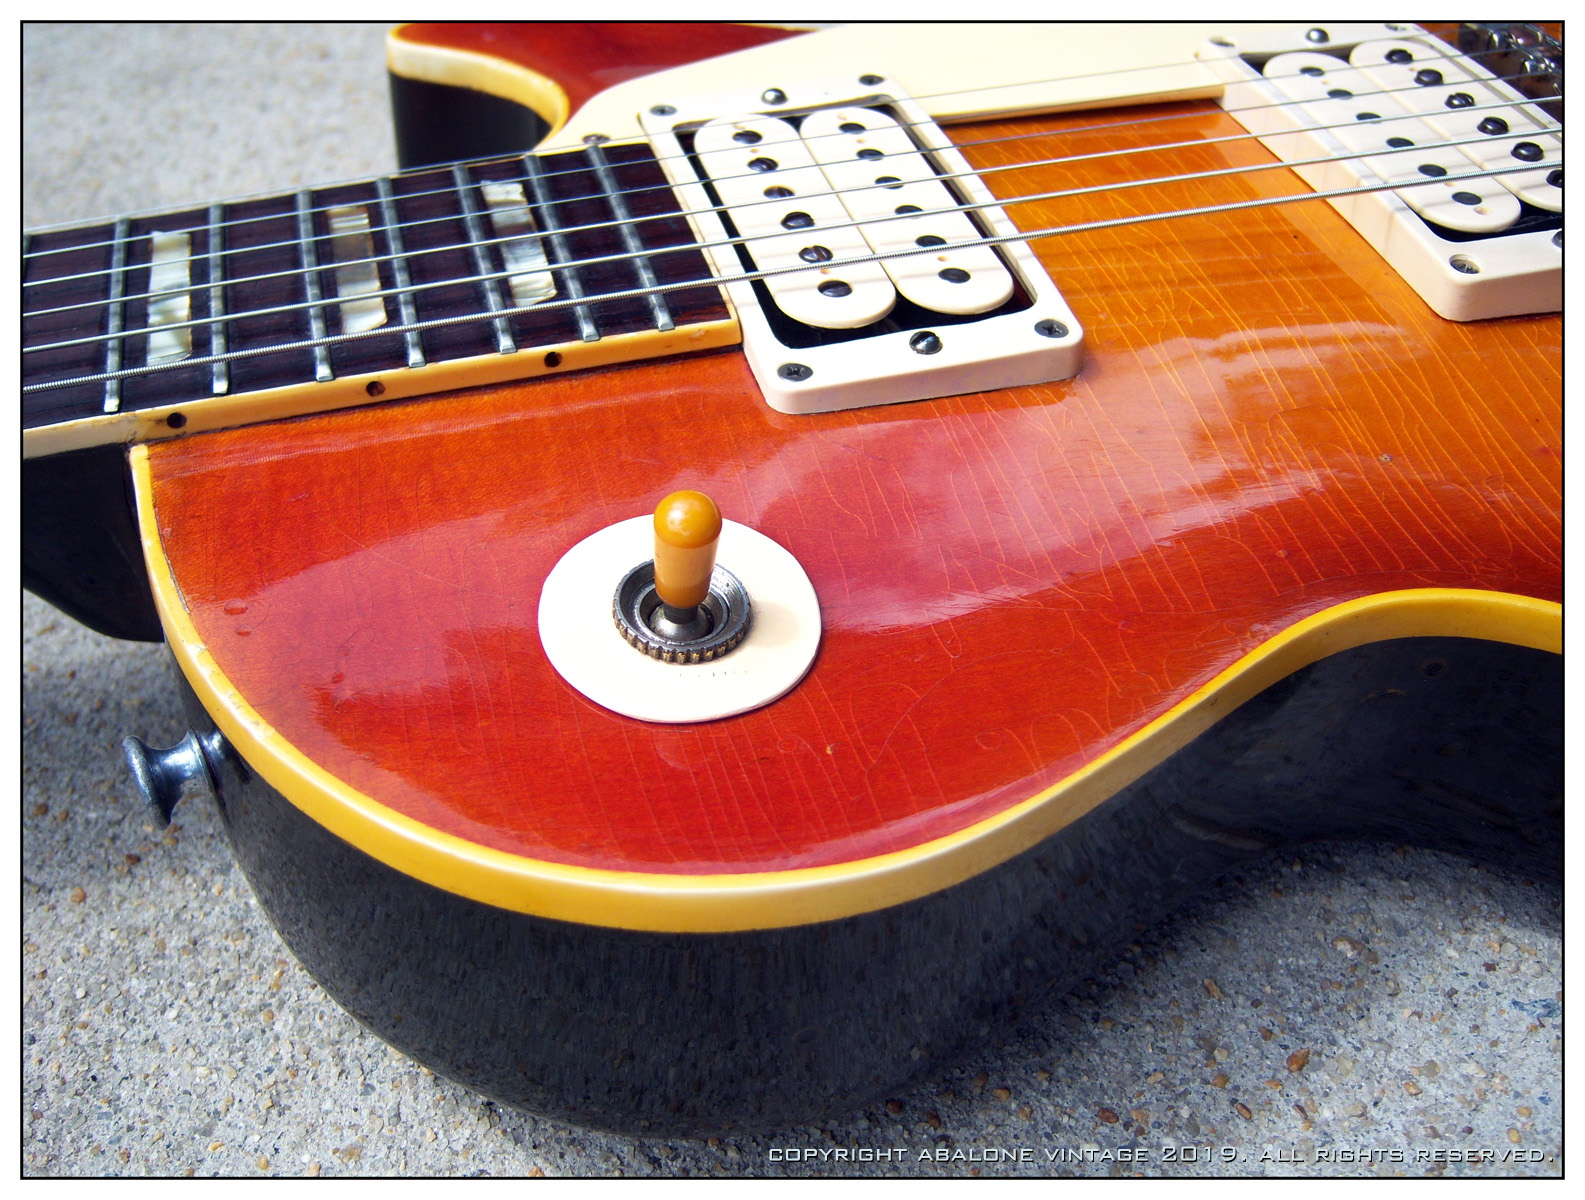 1956_Gibson_Les_Paul_Standard_guitar_1959_conversion_ts.JPG